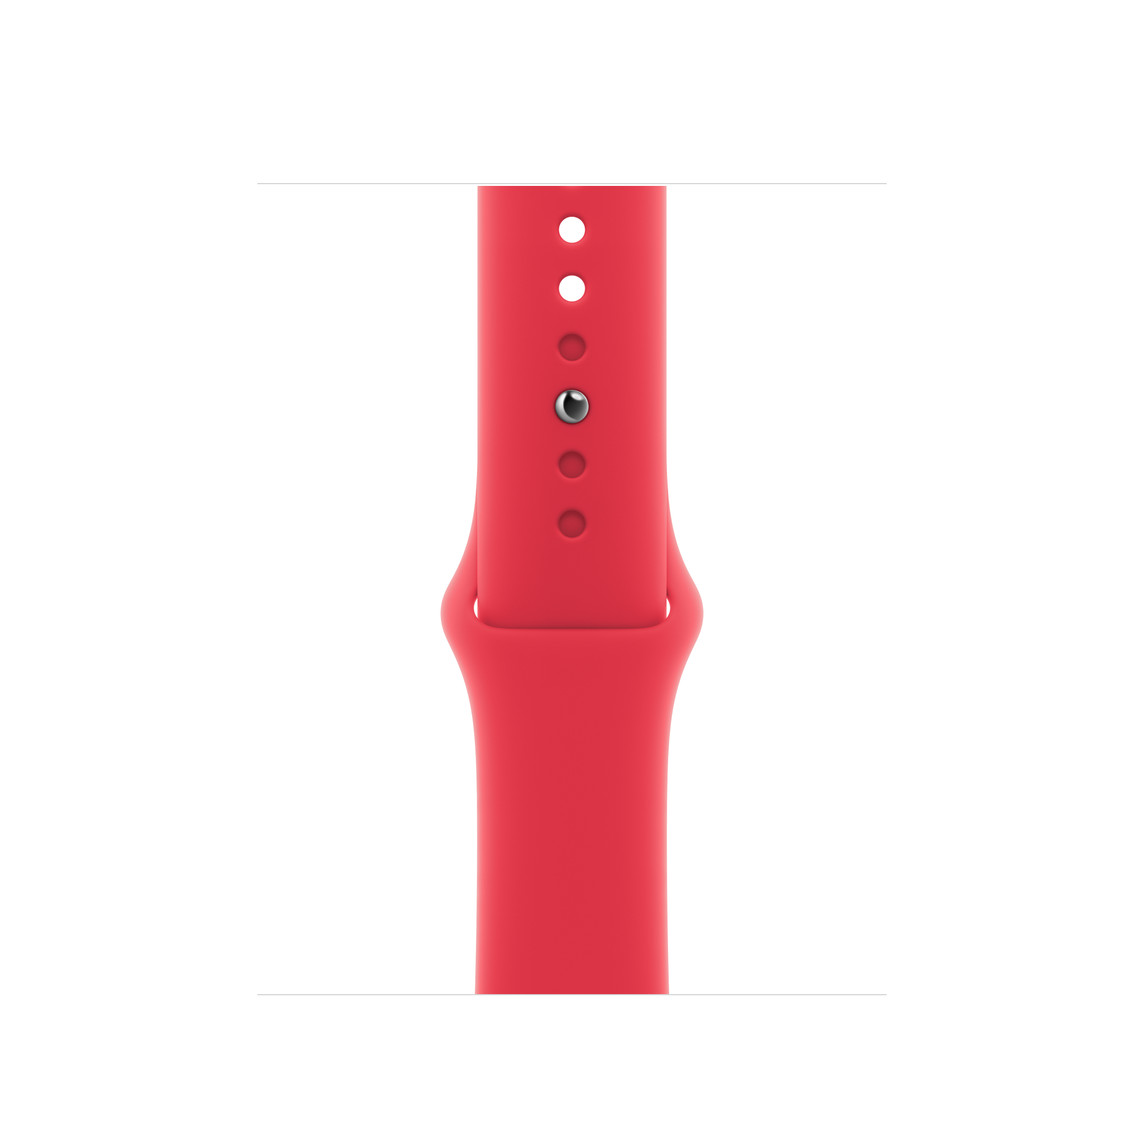 (PRODUCT)RED 運動型錶帶，展示滑順的氟橡膠材質搭配按插式錶扣。